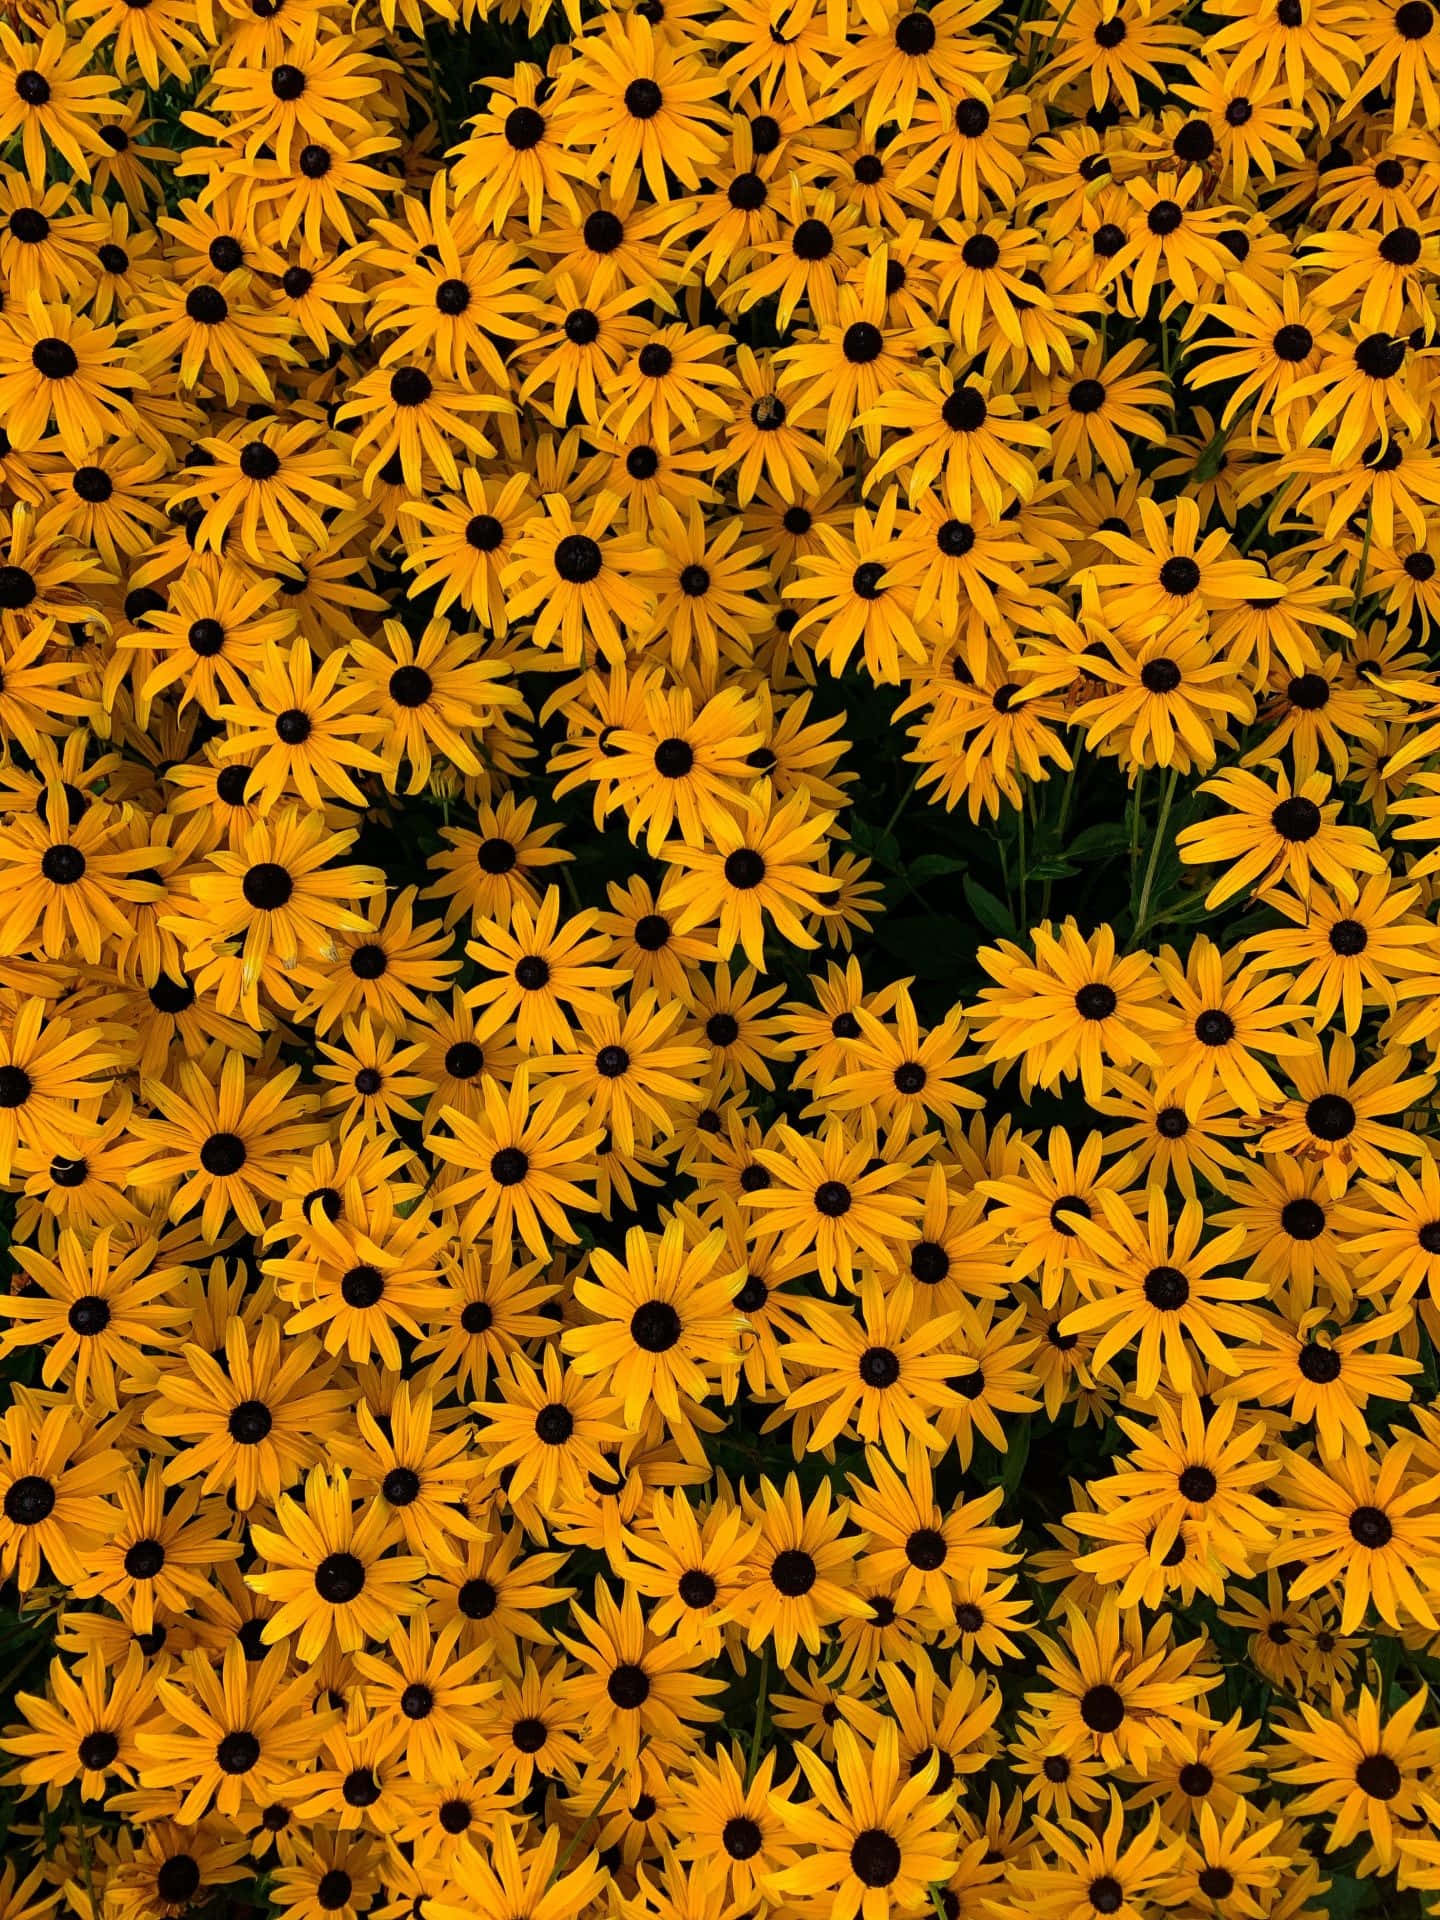 Einfeld Mit Gelben Blumen Mit Schwarzen Flecken. Wallpaper